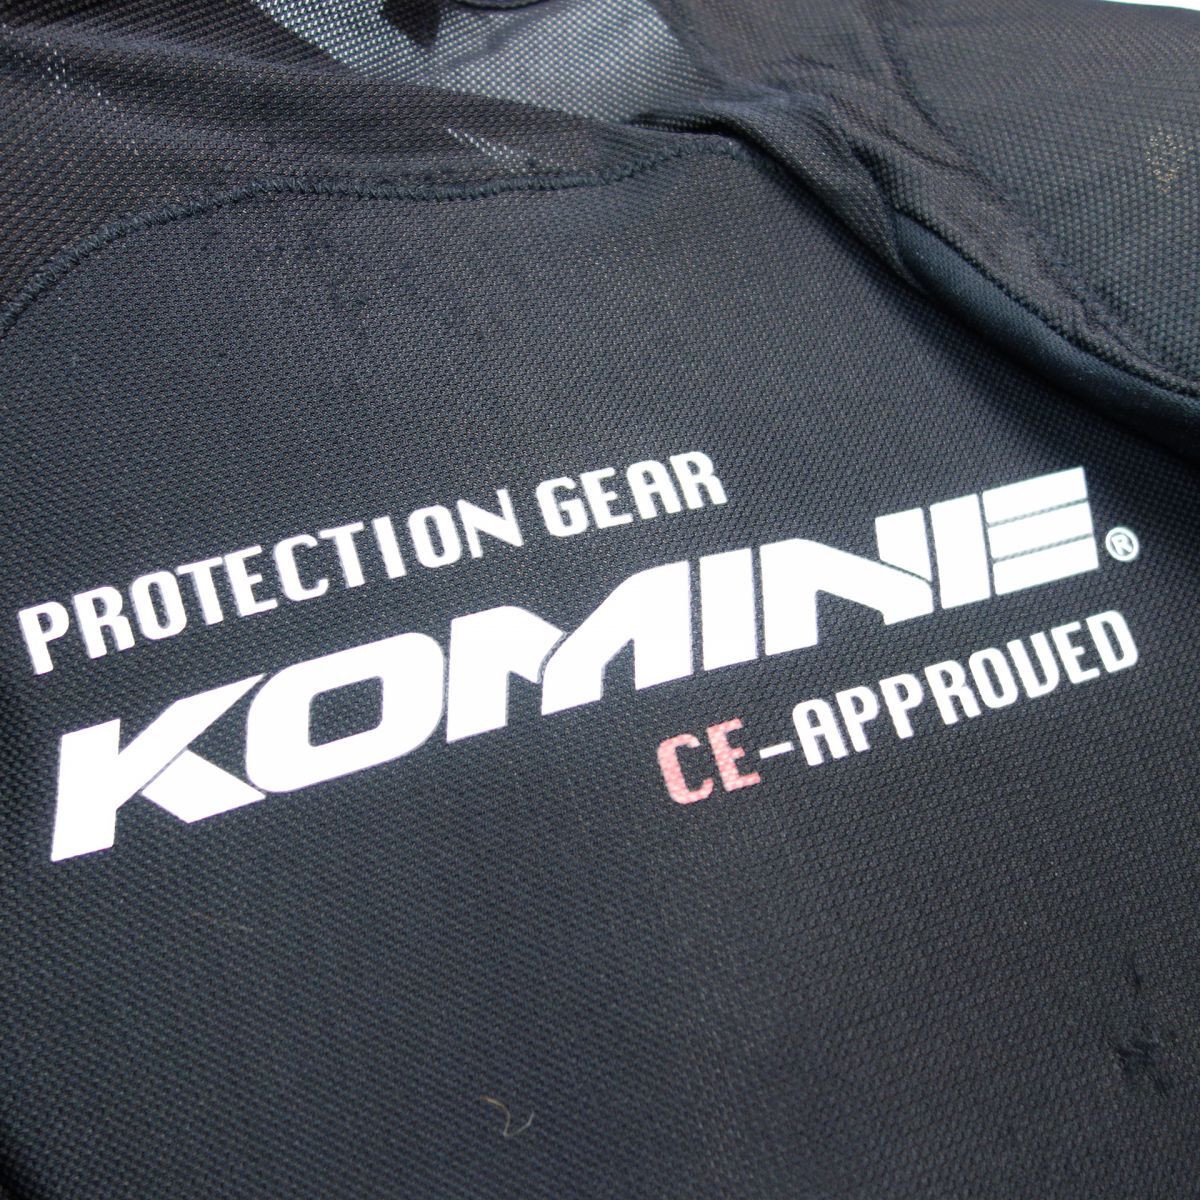 KOMINE コミネ SK-693 CEアーマードトップインナーウェア プロテクター 黒 メンズ M バイクウェアの画像8